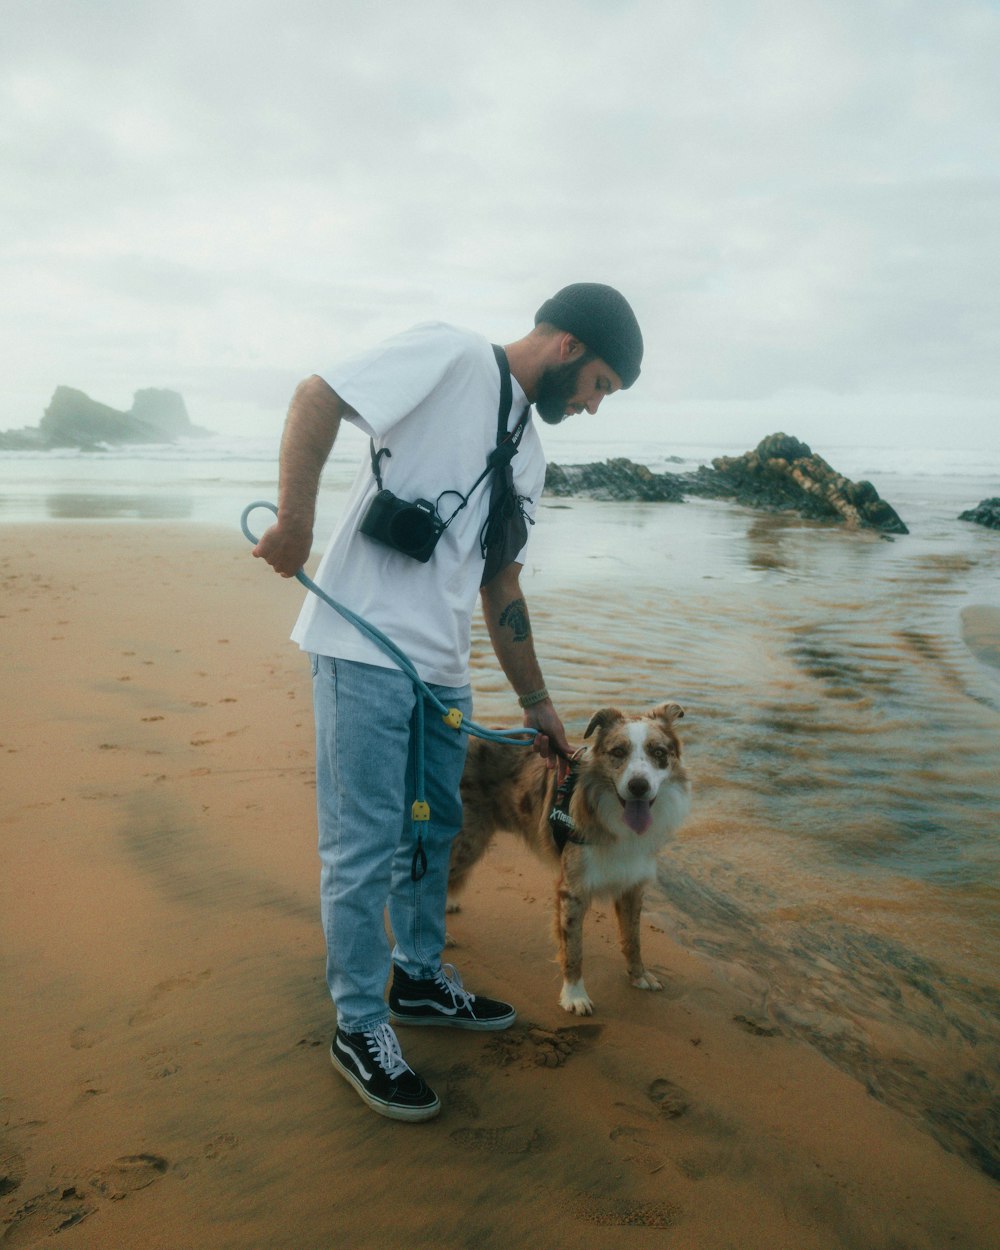 a man on a beach with a dog on a leash